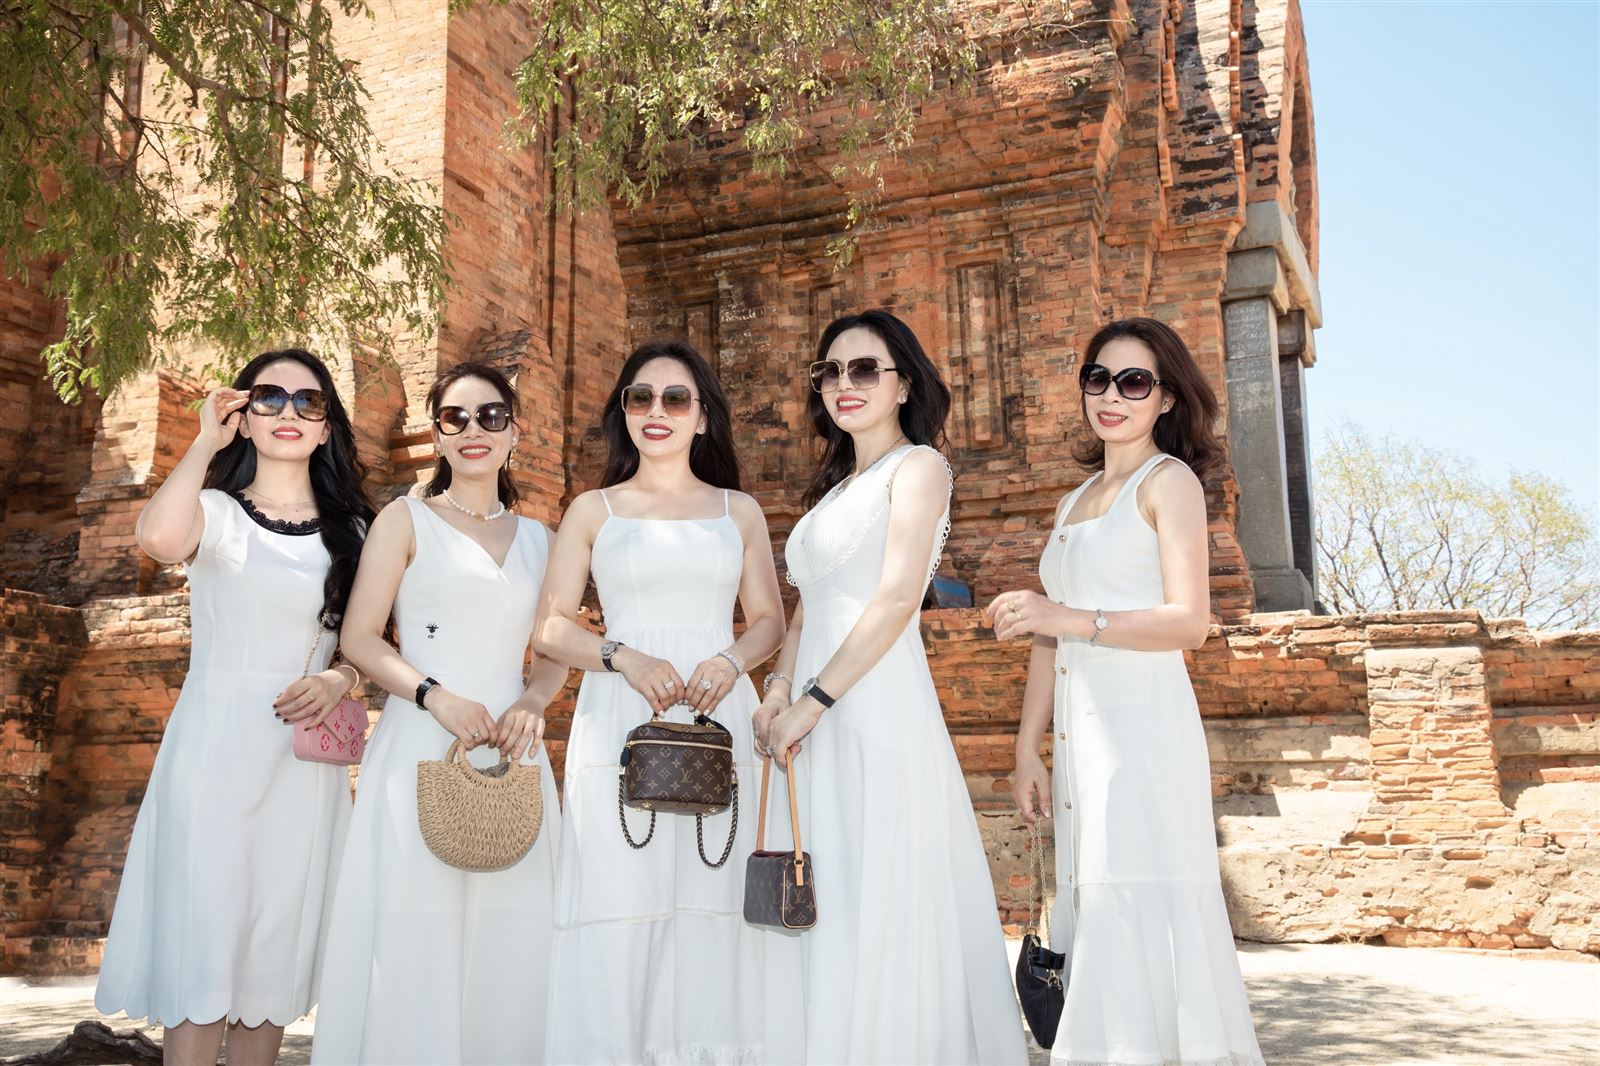 Du lịch Tháp chàm Ninh Thuận